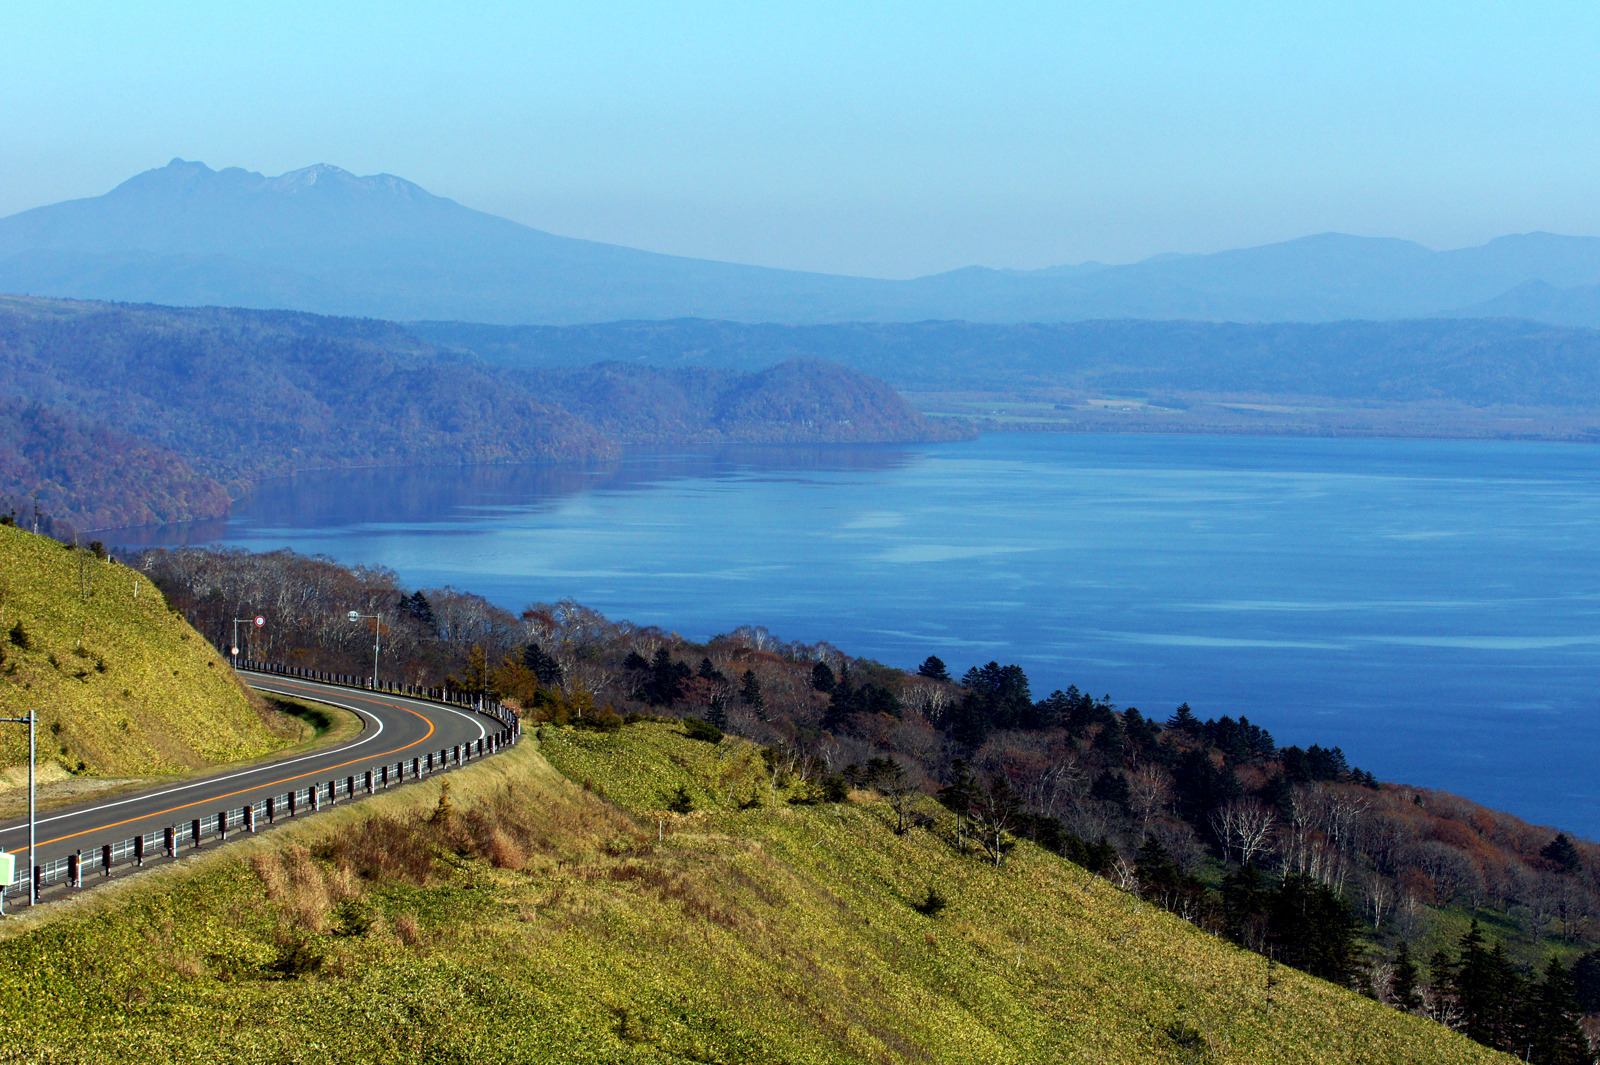 北海道最大的湖泊附近,宁静的湖水呈现出漂亮的蓝色,周围的景色已是一